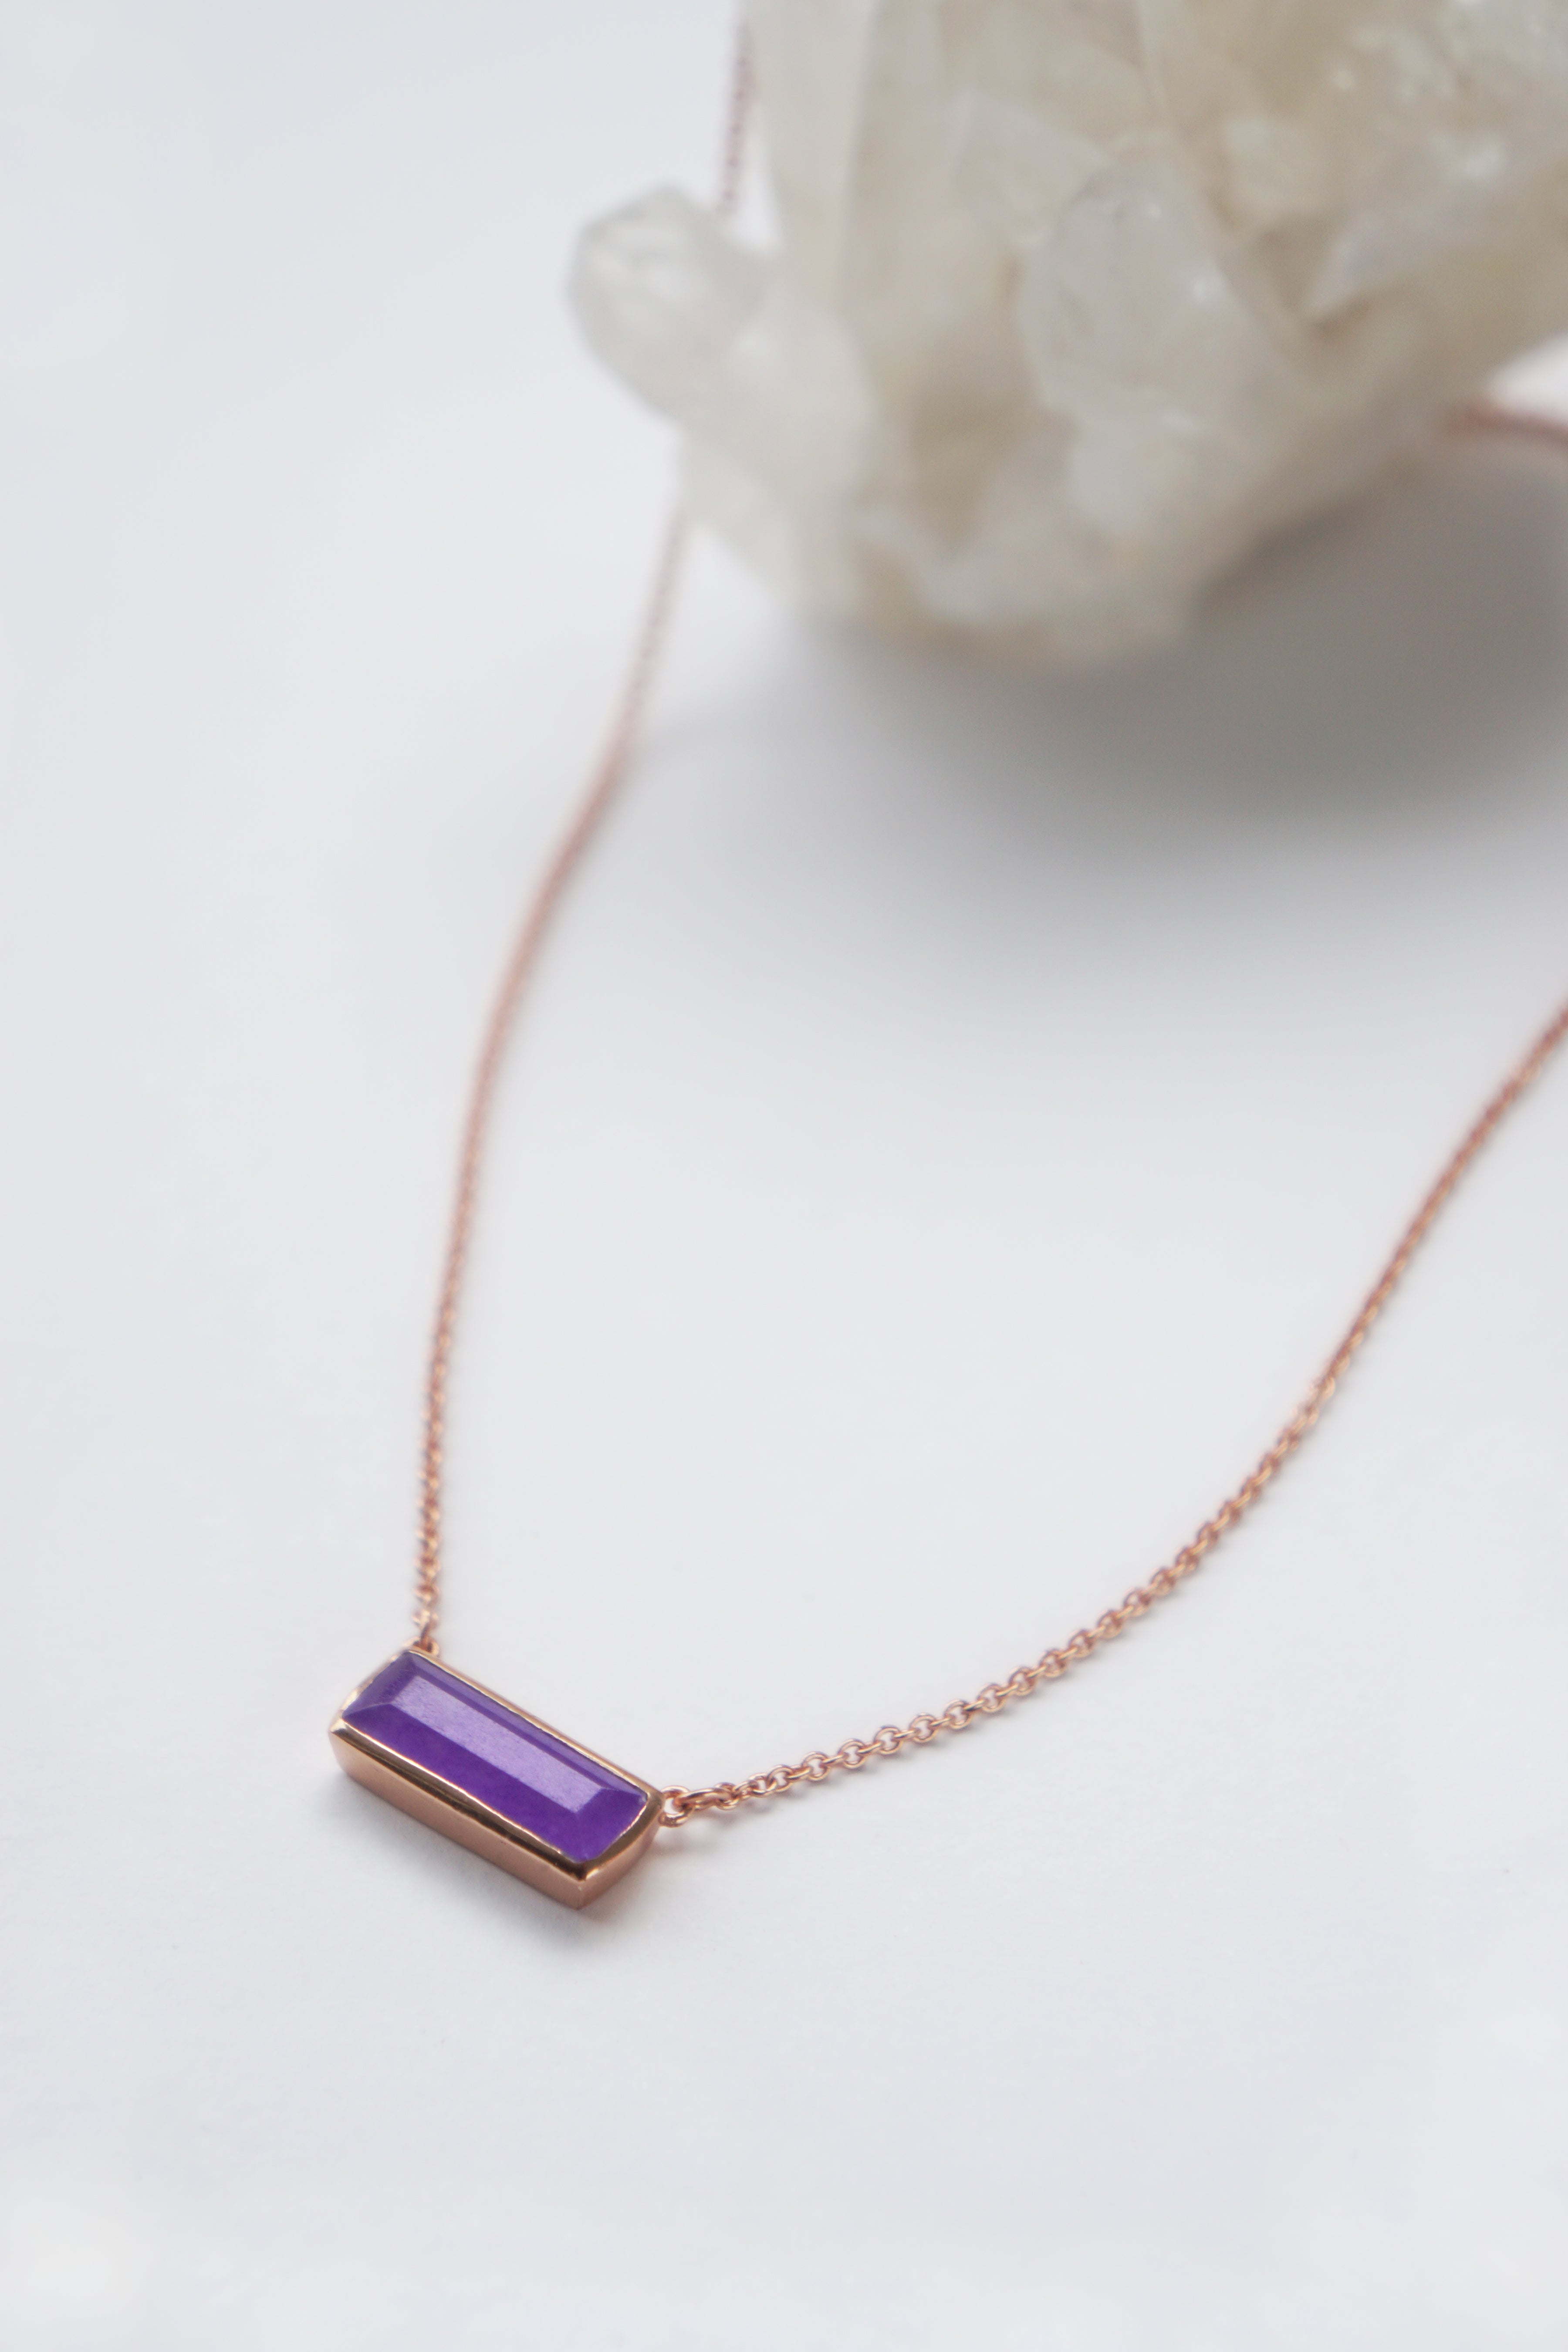 Prism Necklace - Lavender Jade